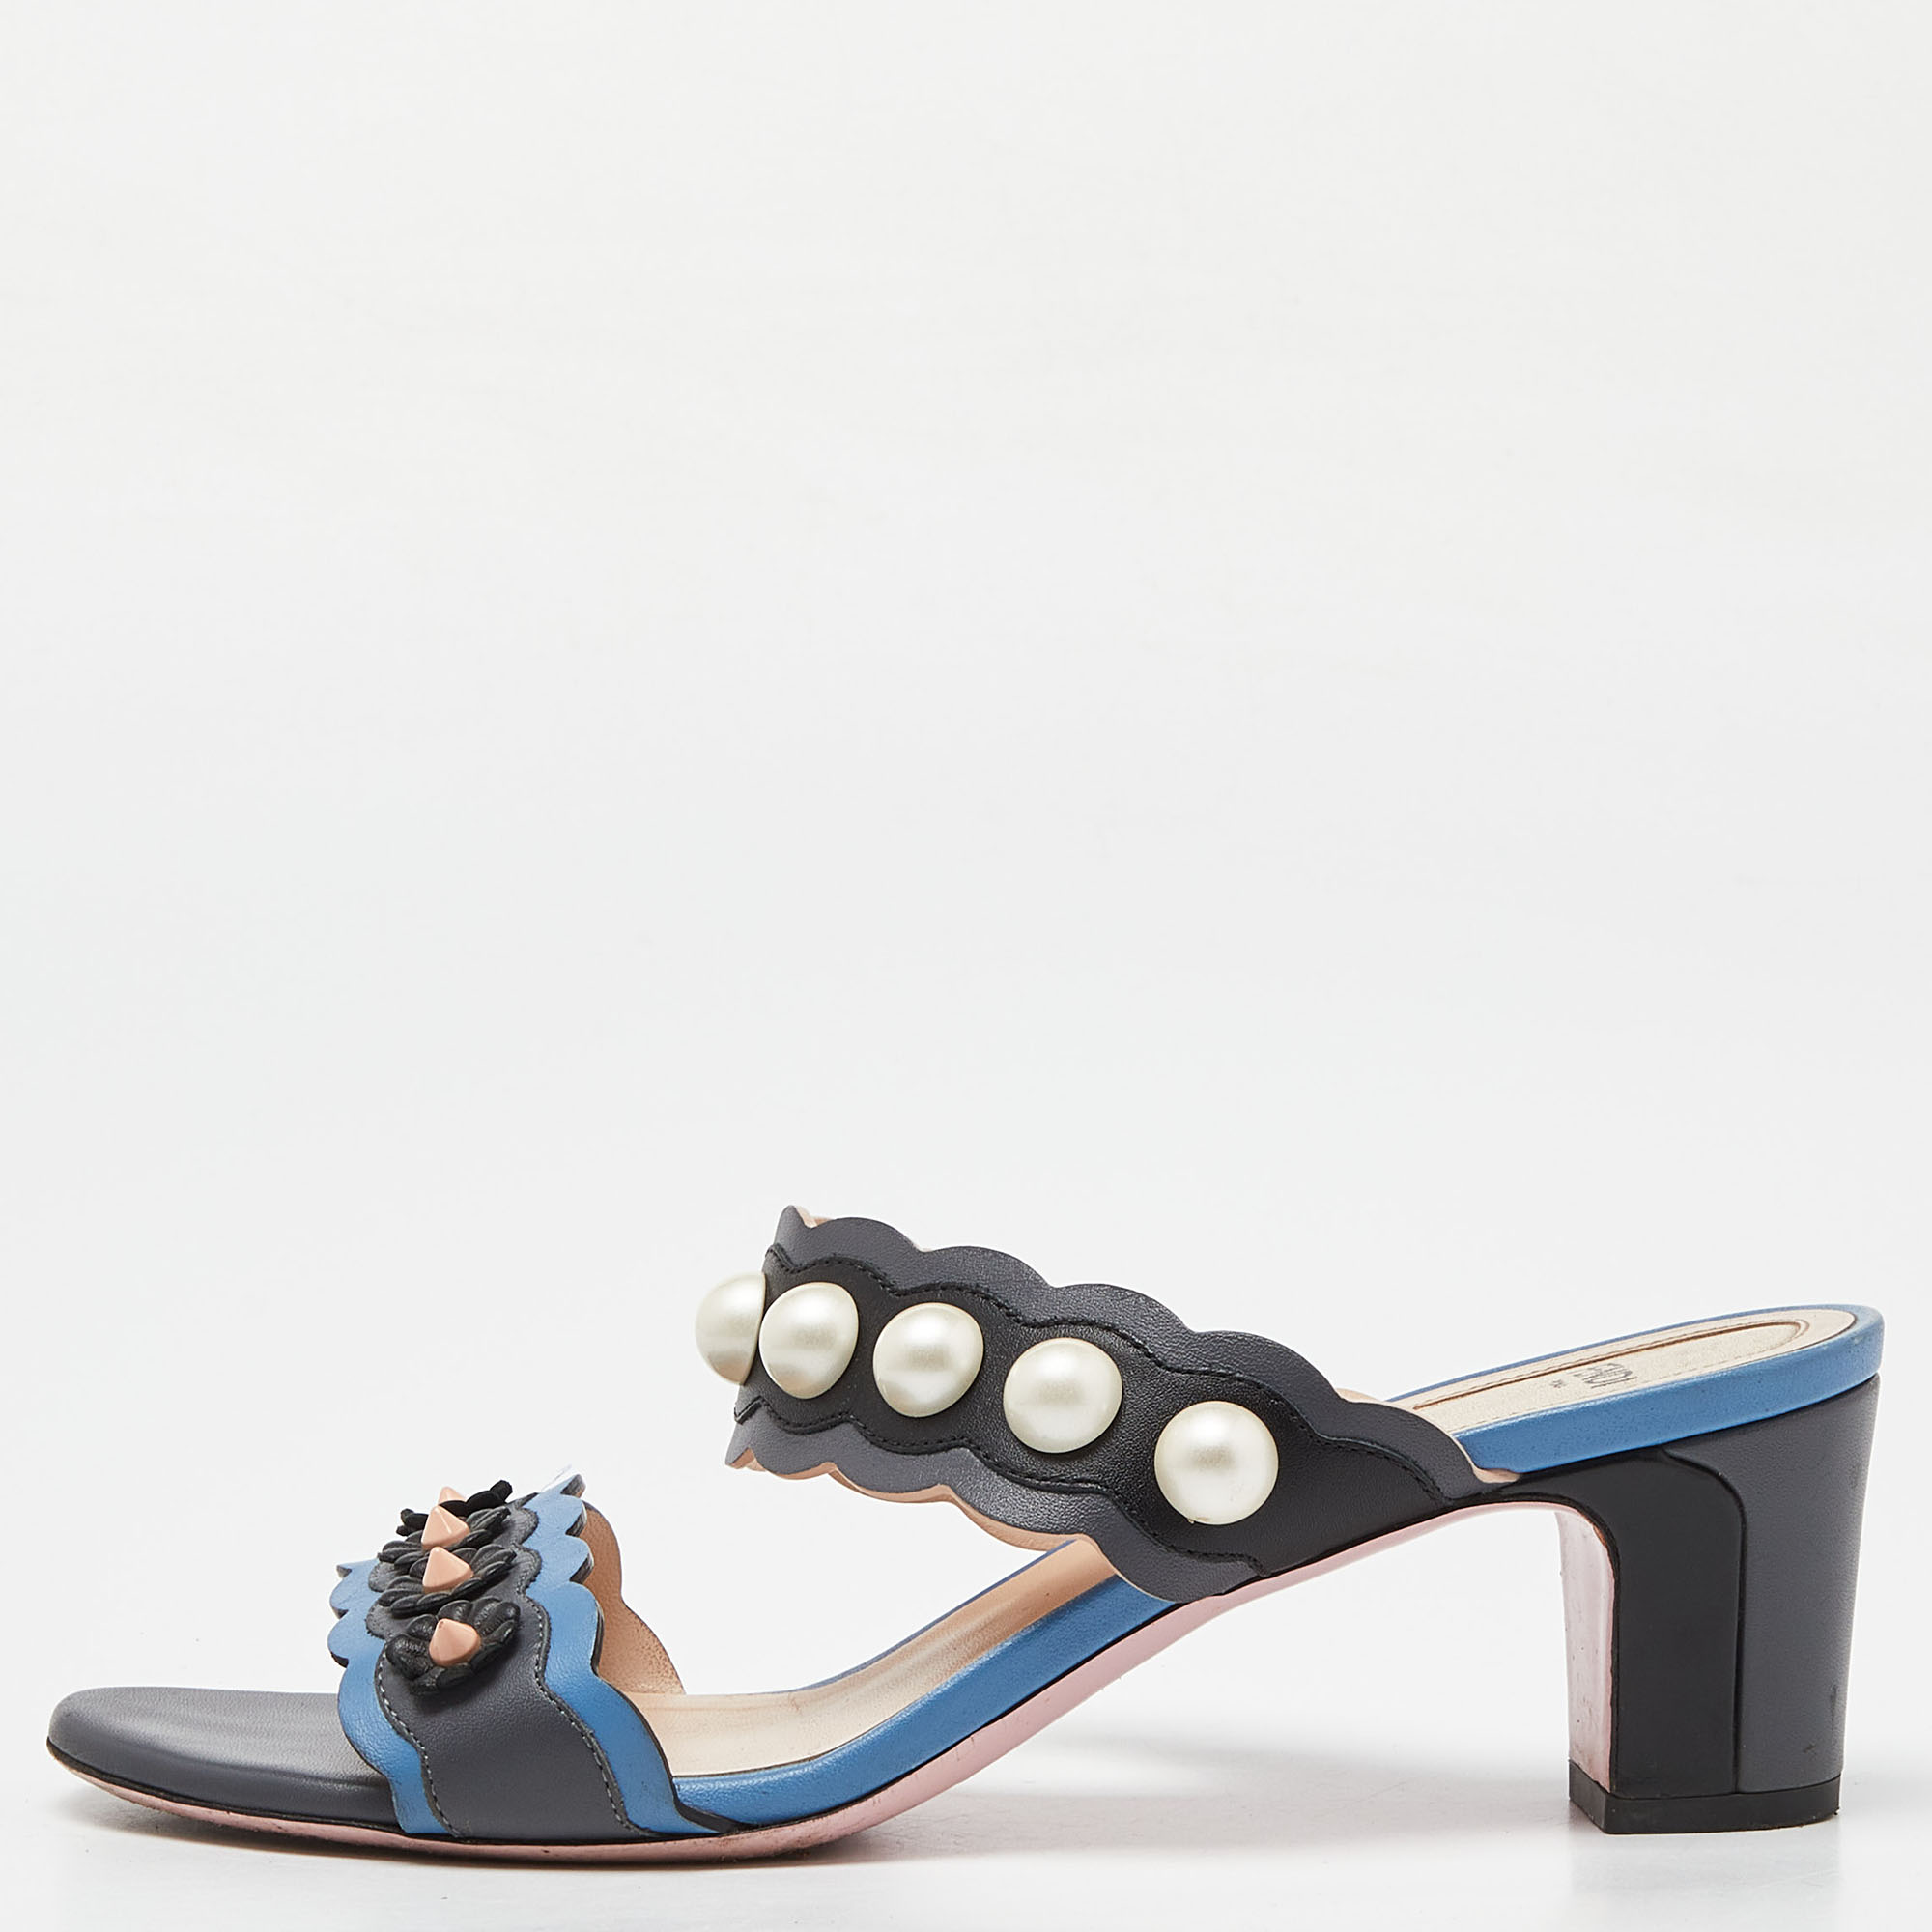 Fendi grey/blue leather faux pearl embellished slide sandals size 38.5